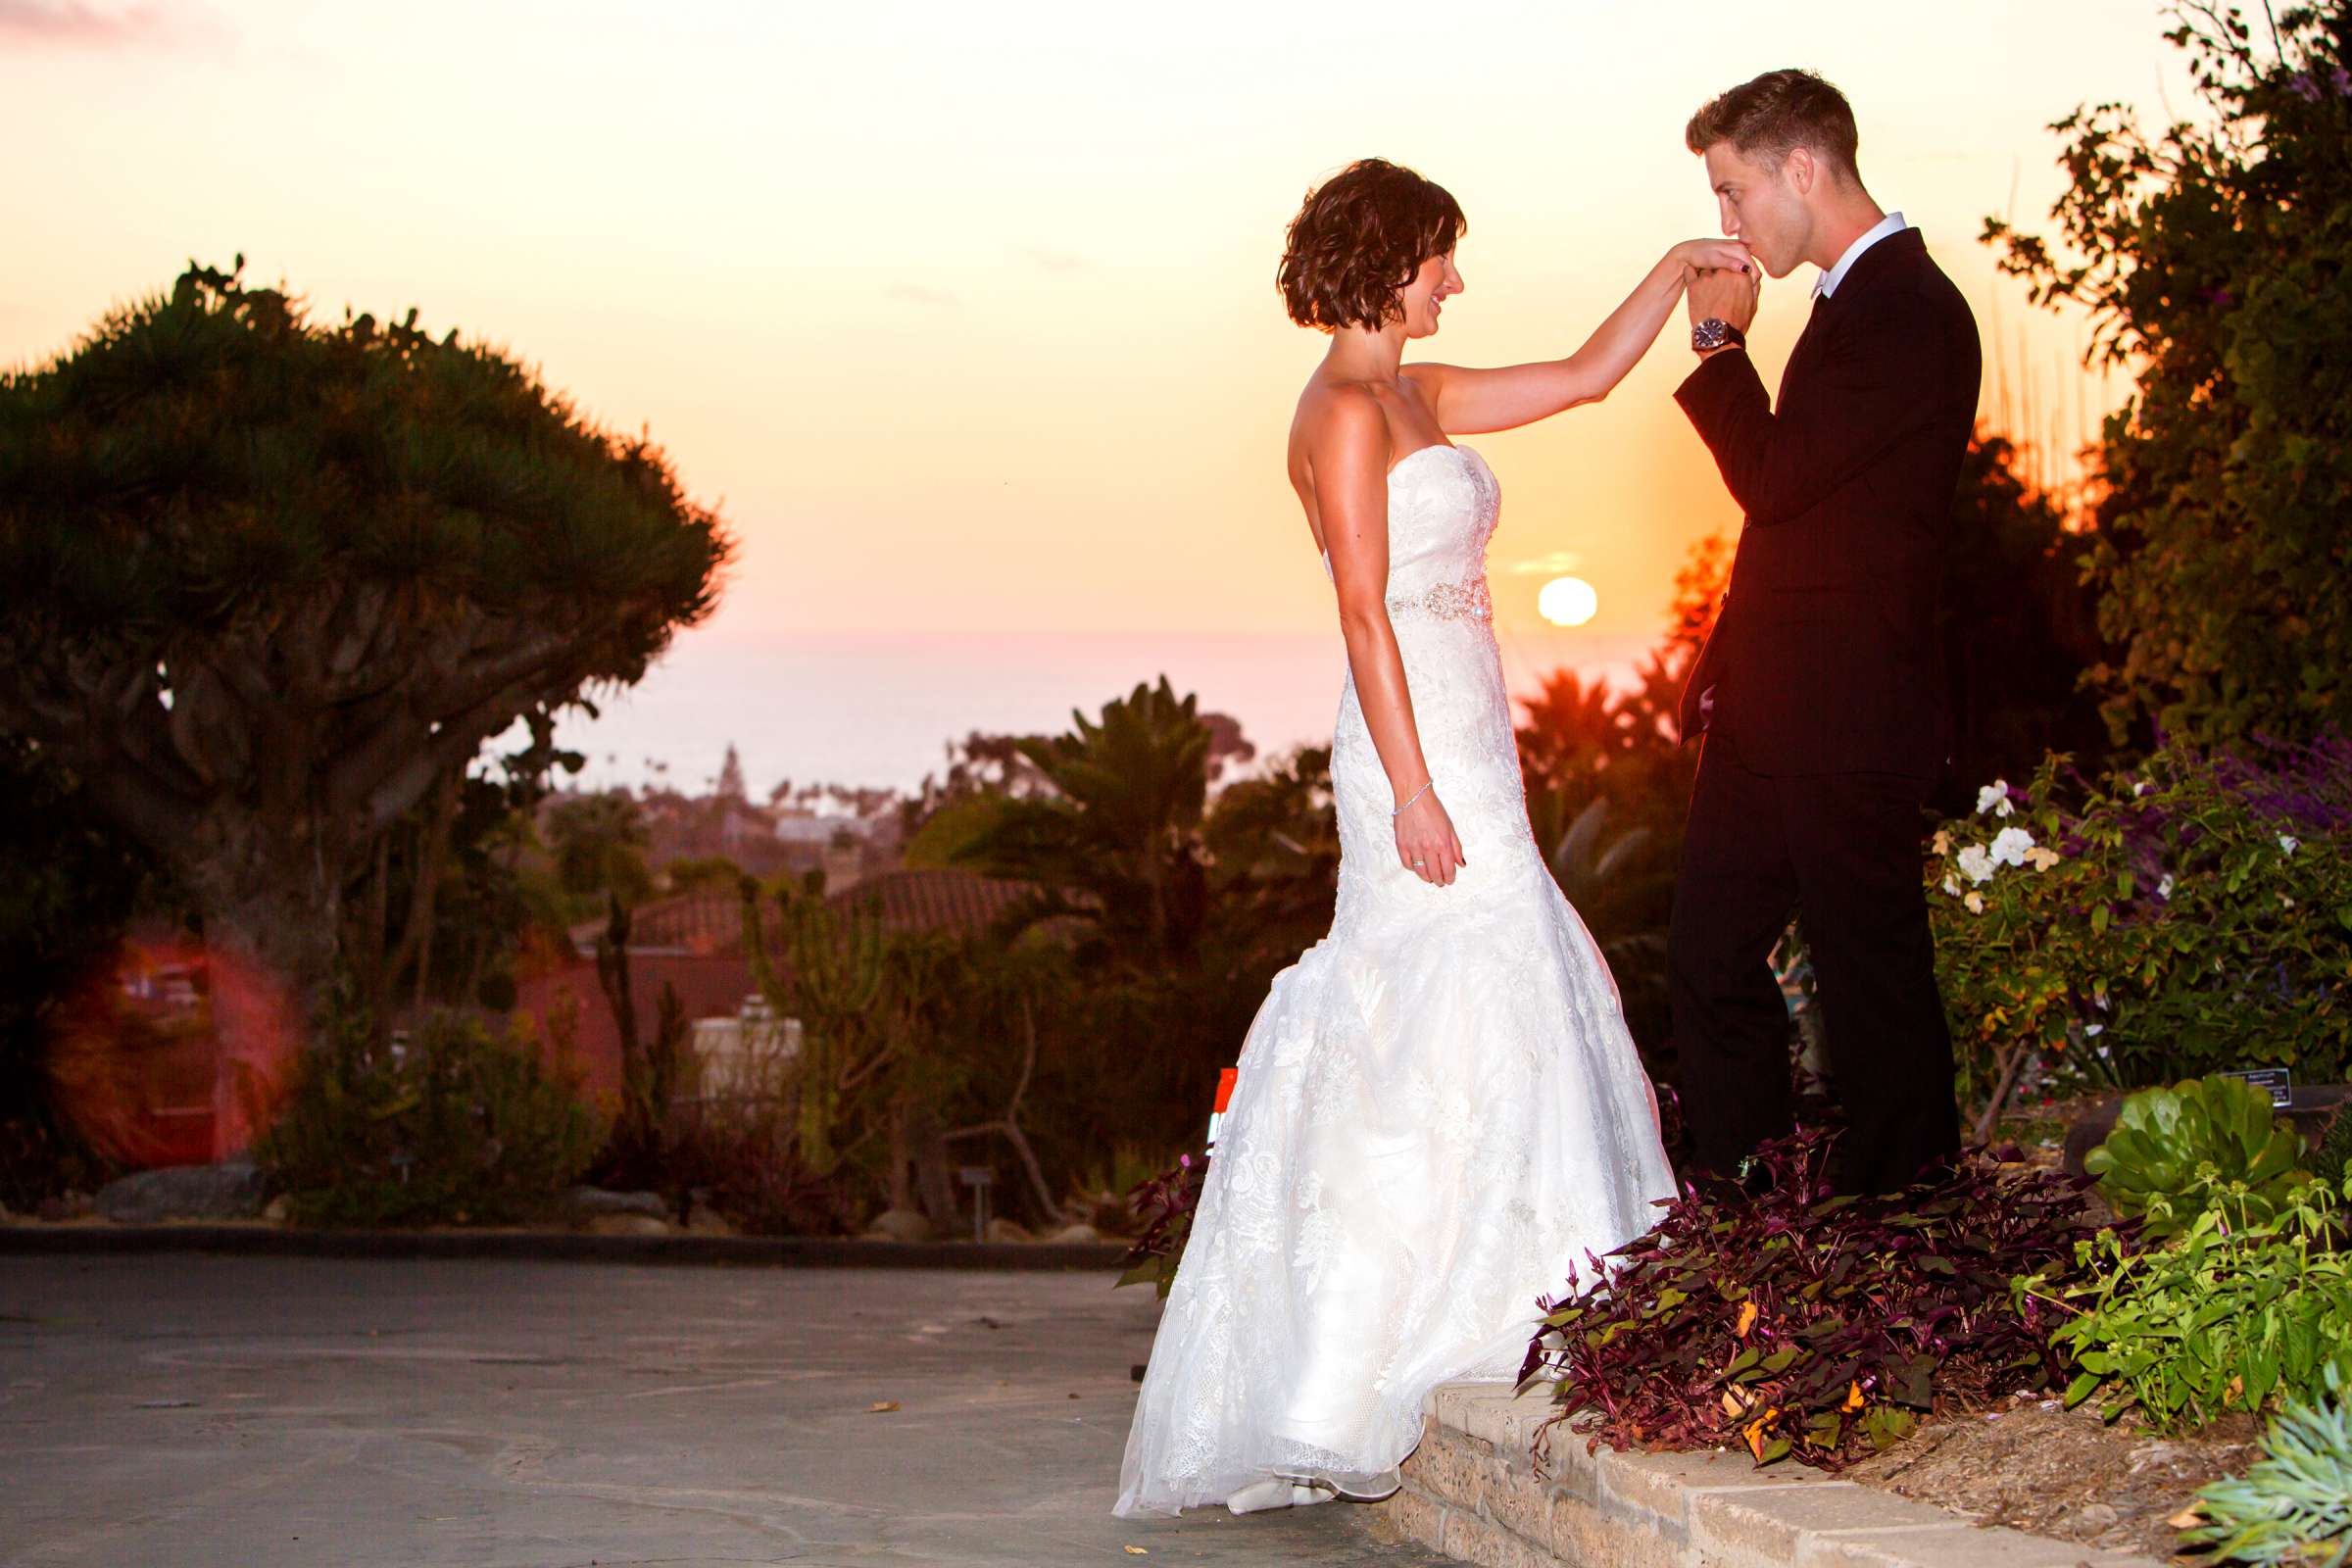 San Diego Botanic Garden Wedding, Lauren and Bryant Wedding Photo #138726 by True Photography